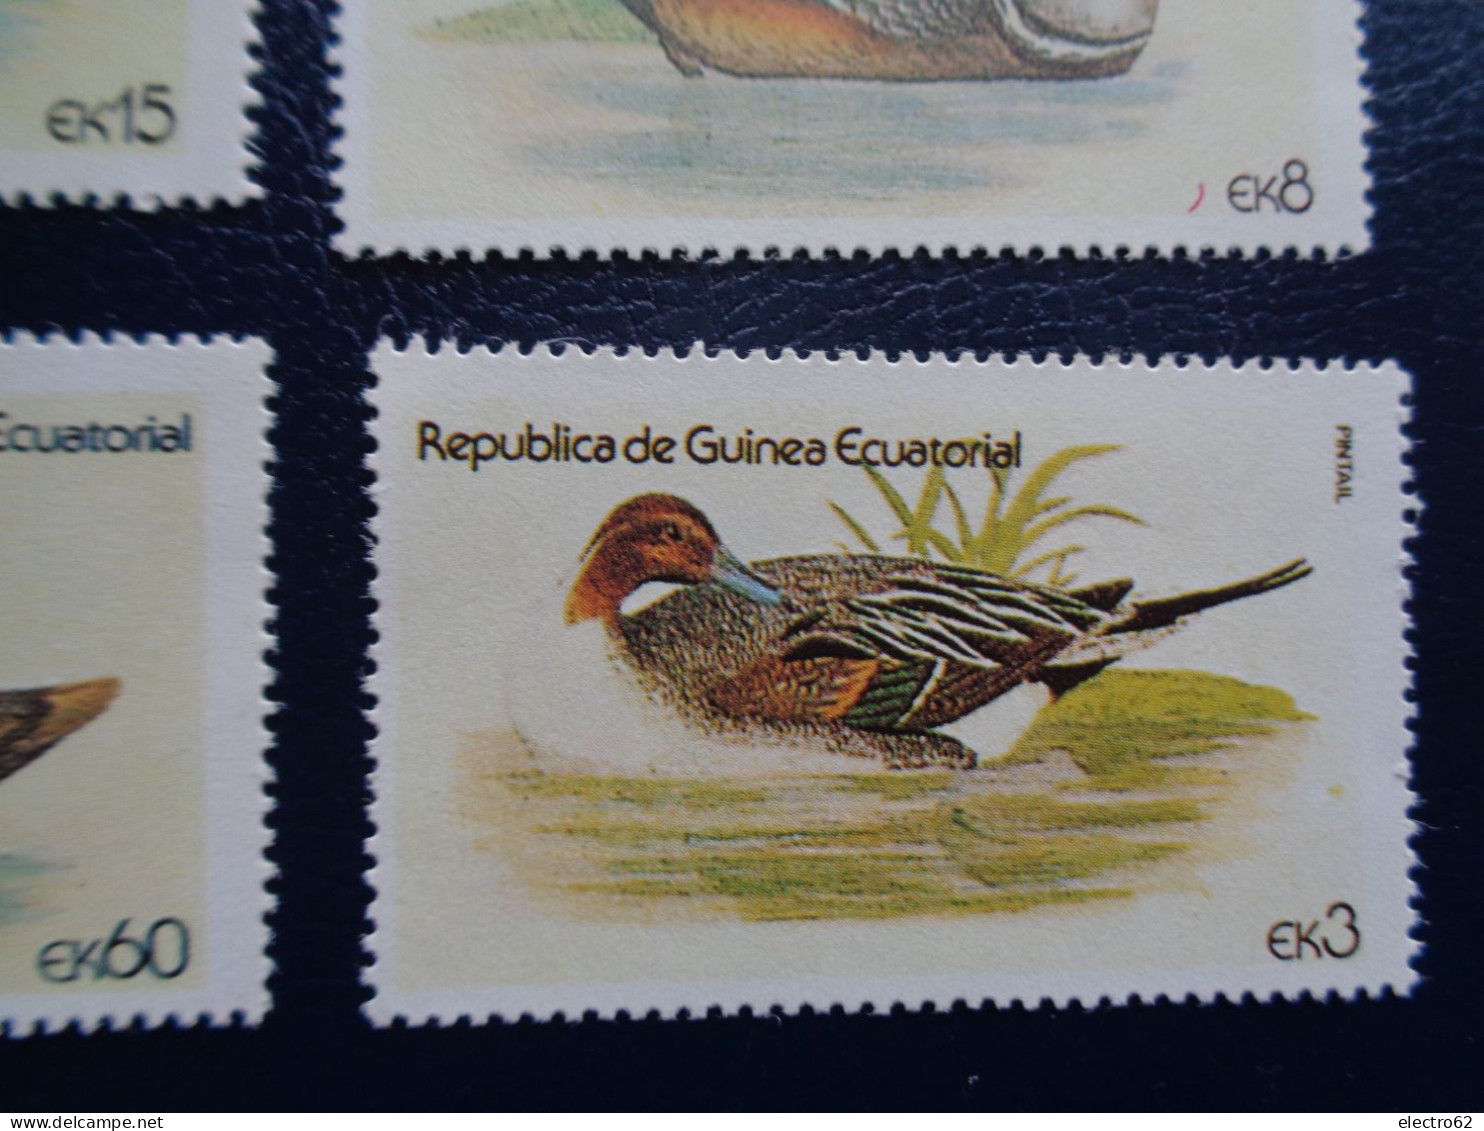 Guinée Equatoriale canard duck ente pato anatra eend giappone and Guinea Ecuatorial